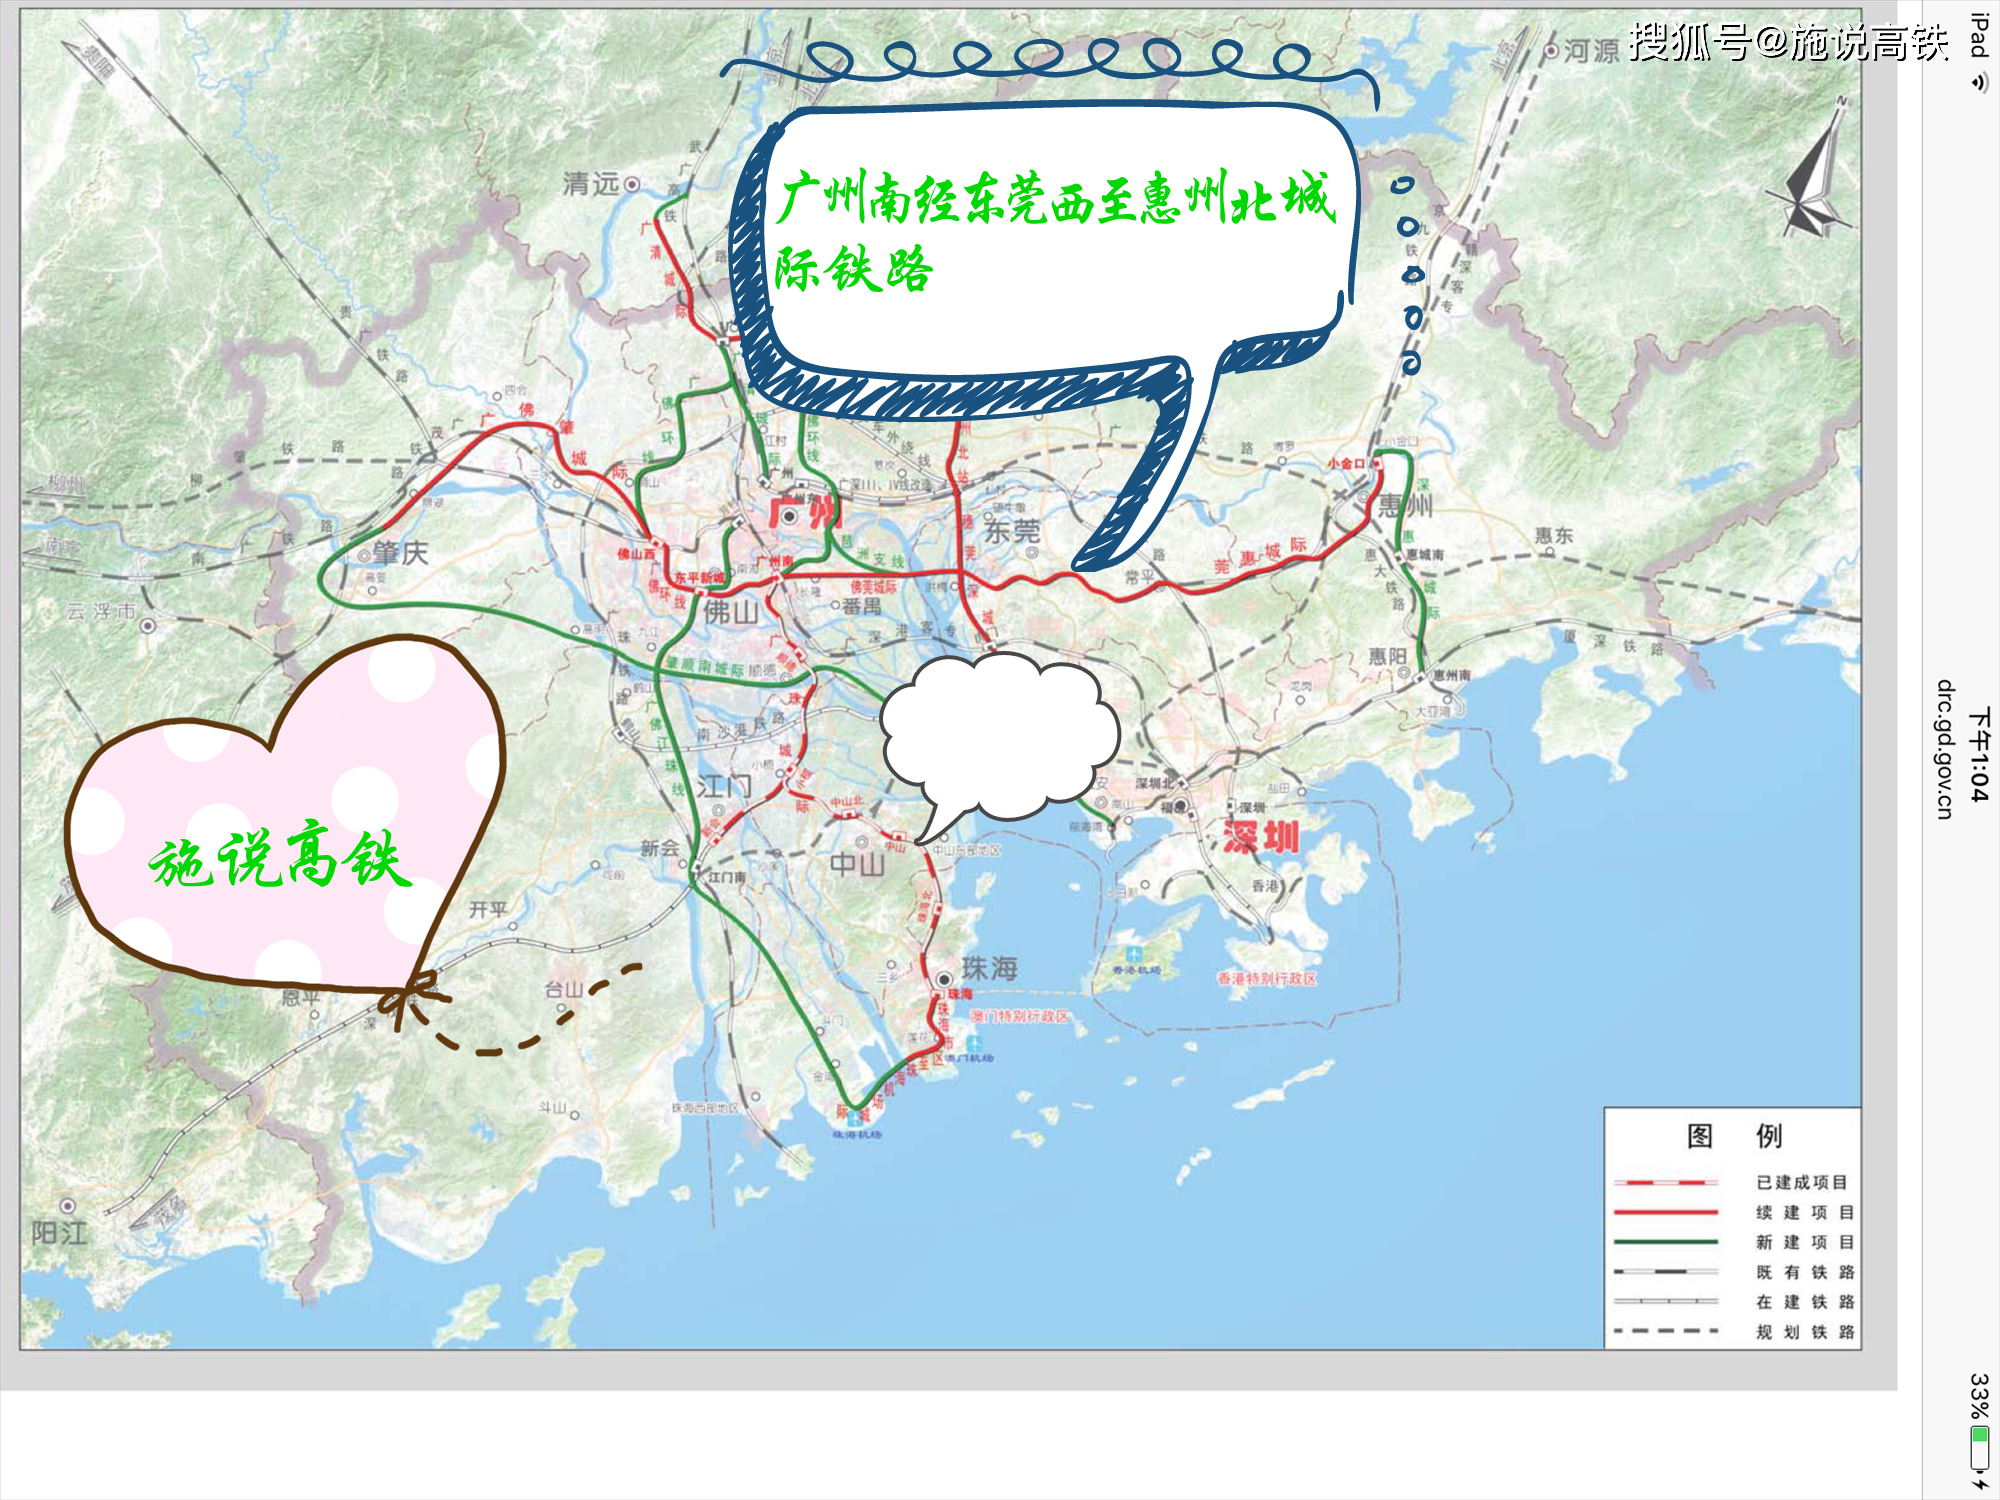 广惠城际铁路小金口至惠州北段的设计开行时速与工期均已确定